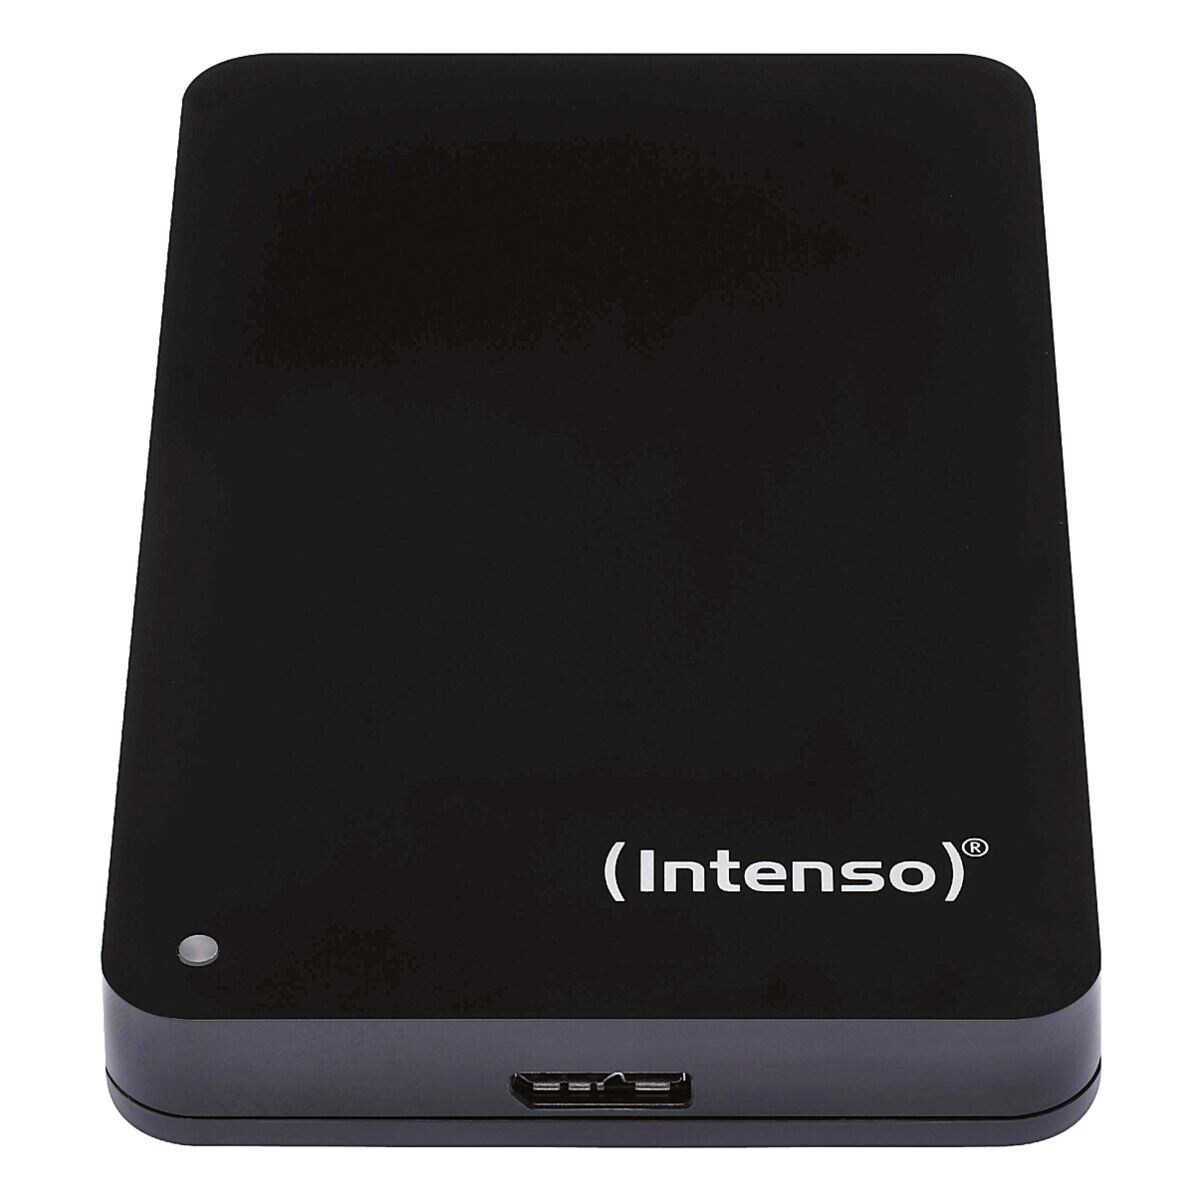 Intenso MemoryCase 4 TB, disque dur externe HDD, USB 3.0, 6,35 cm (2,5 pouces)